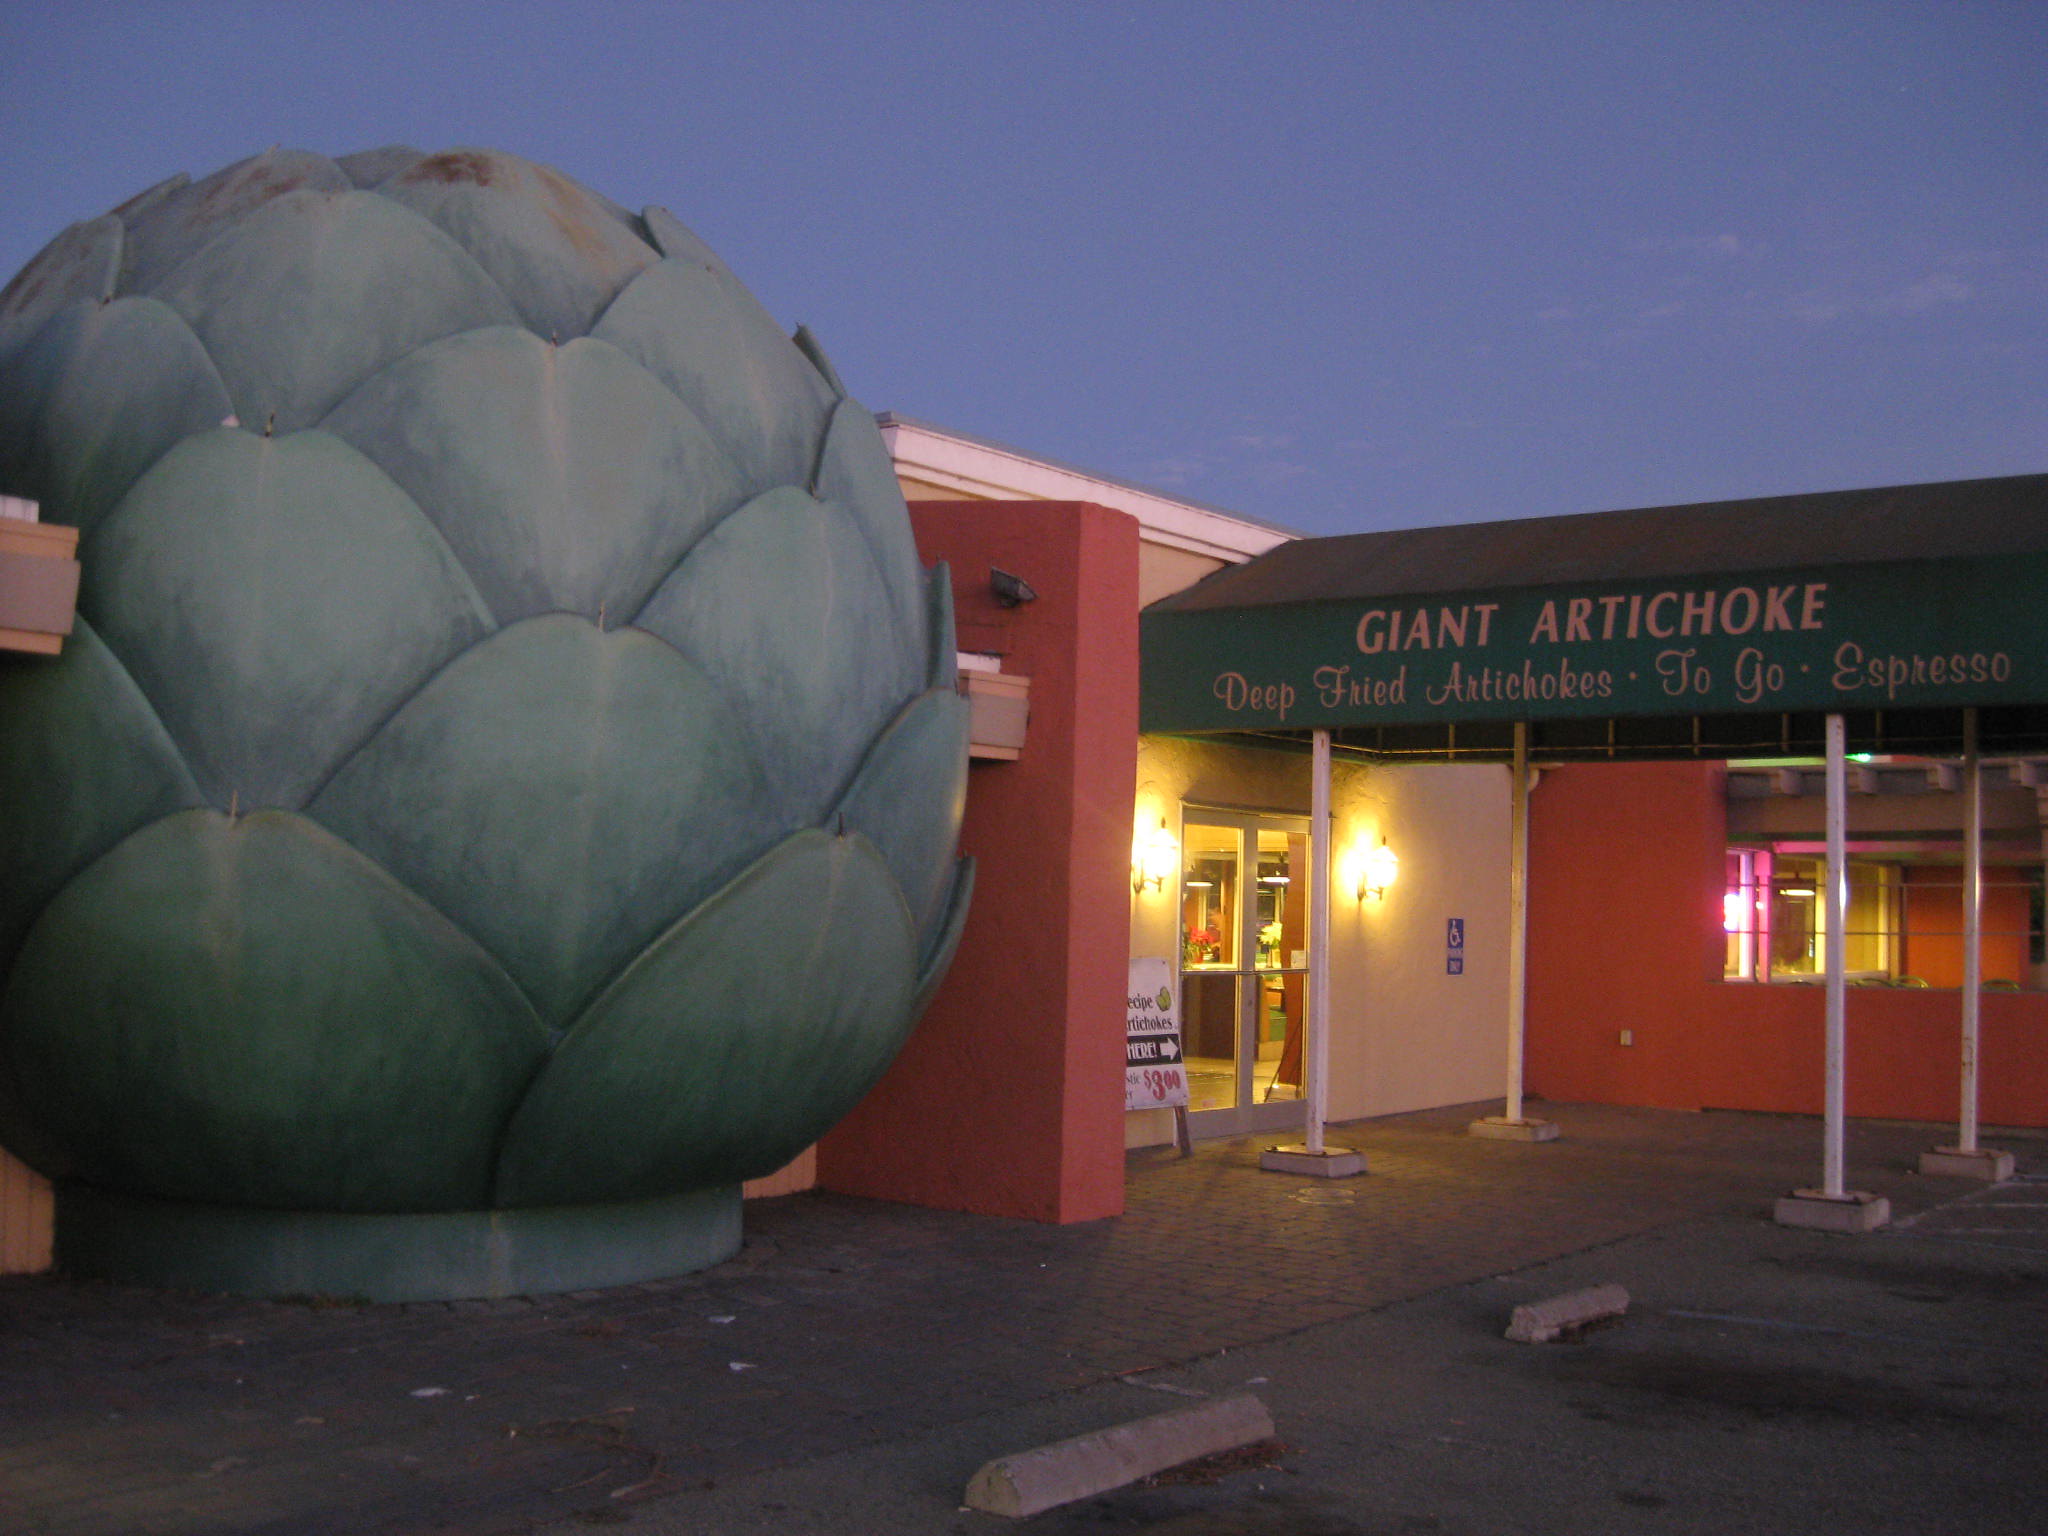 Giant Artichoke